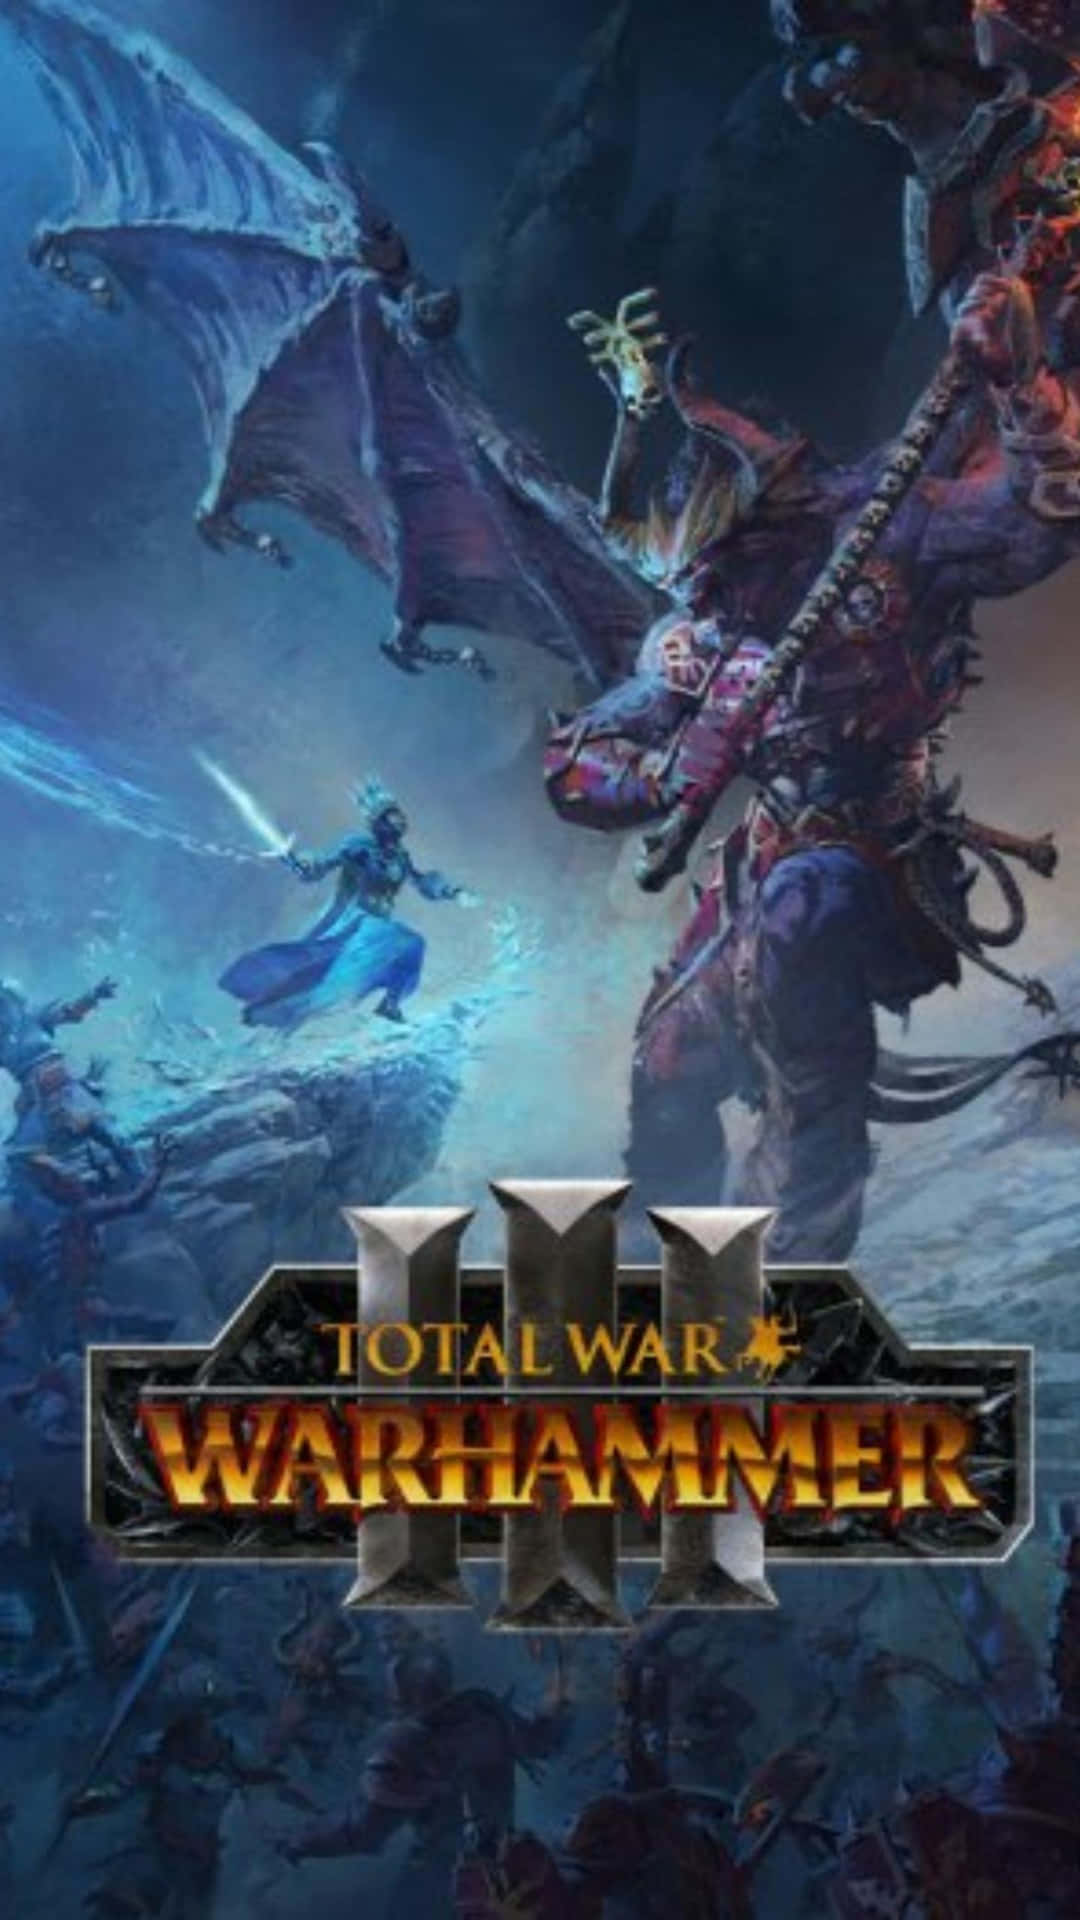 Totalwar Warhammer Iii Är Ett Fantastiskt Spel Som Jag Gärna Skulle Vilja Ha Som Bakgrund På Min Dator Eller Mobila Enhet.